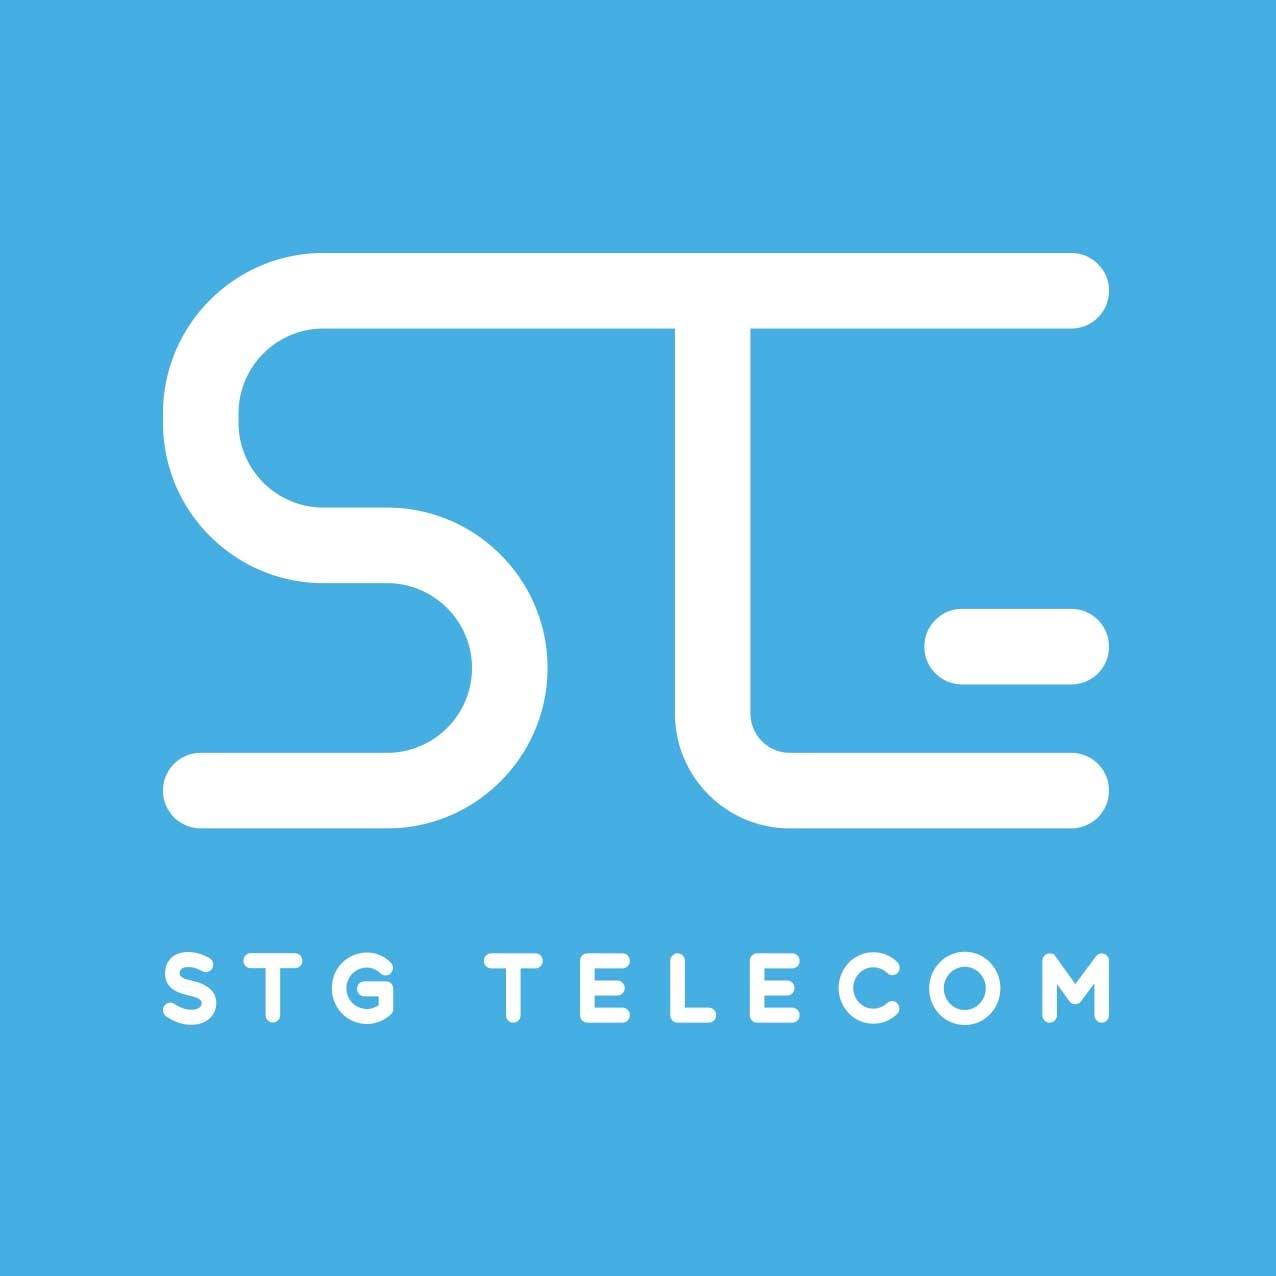 STG Telecom